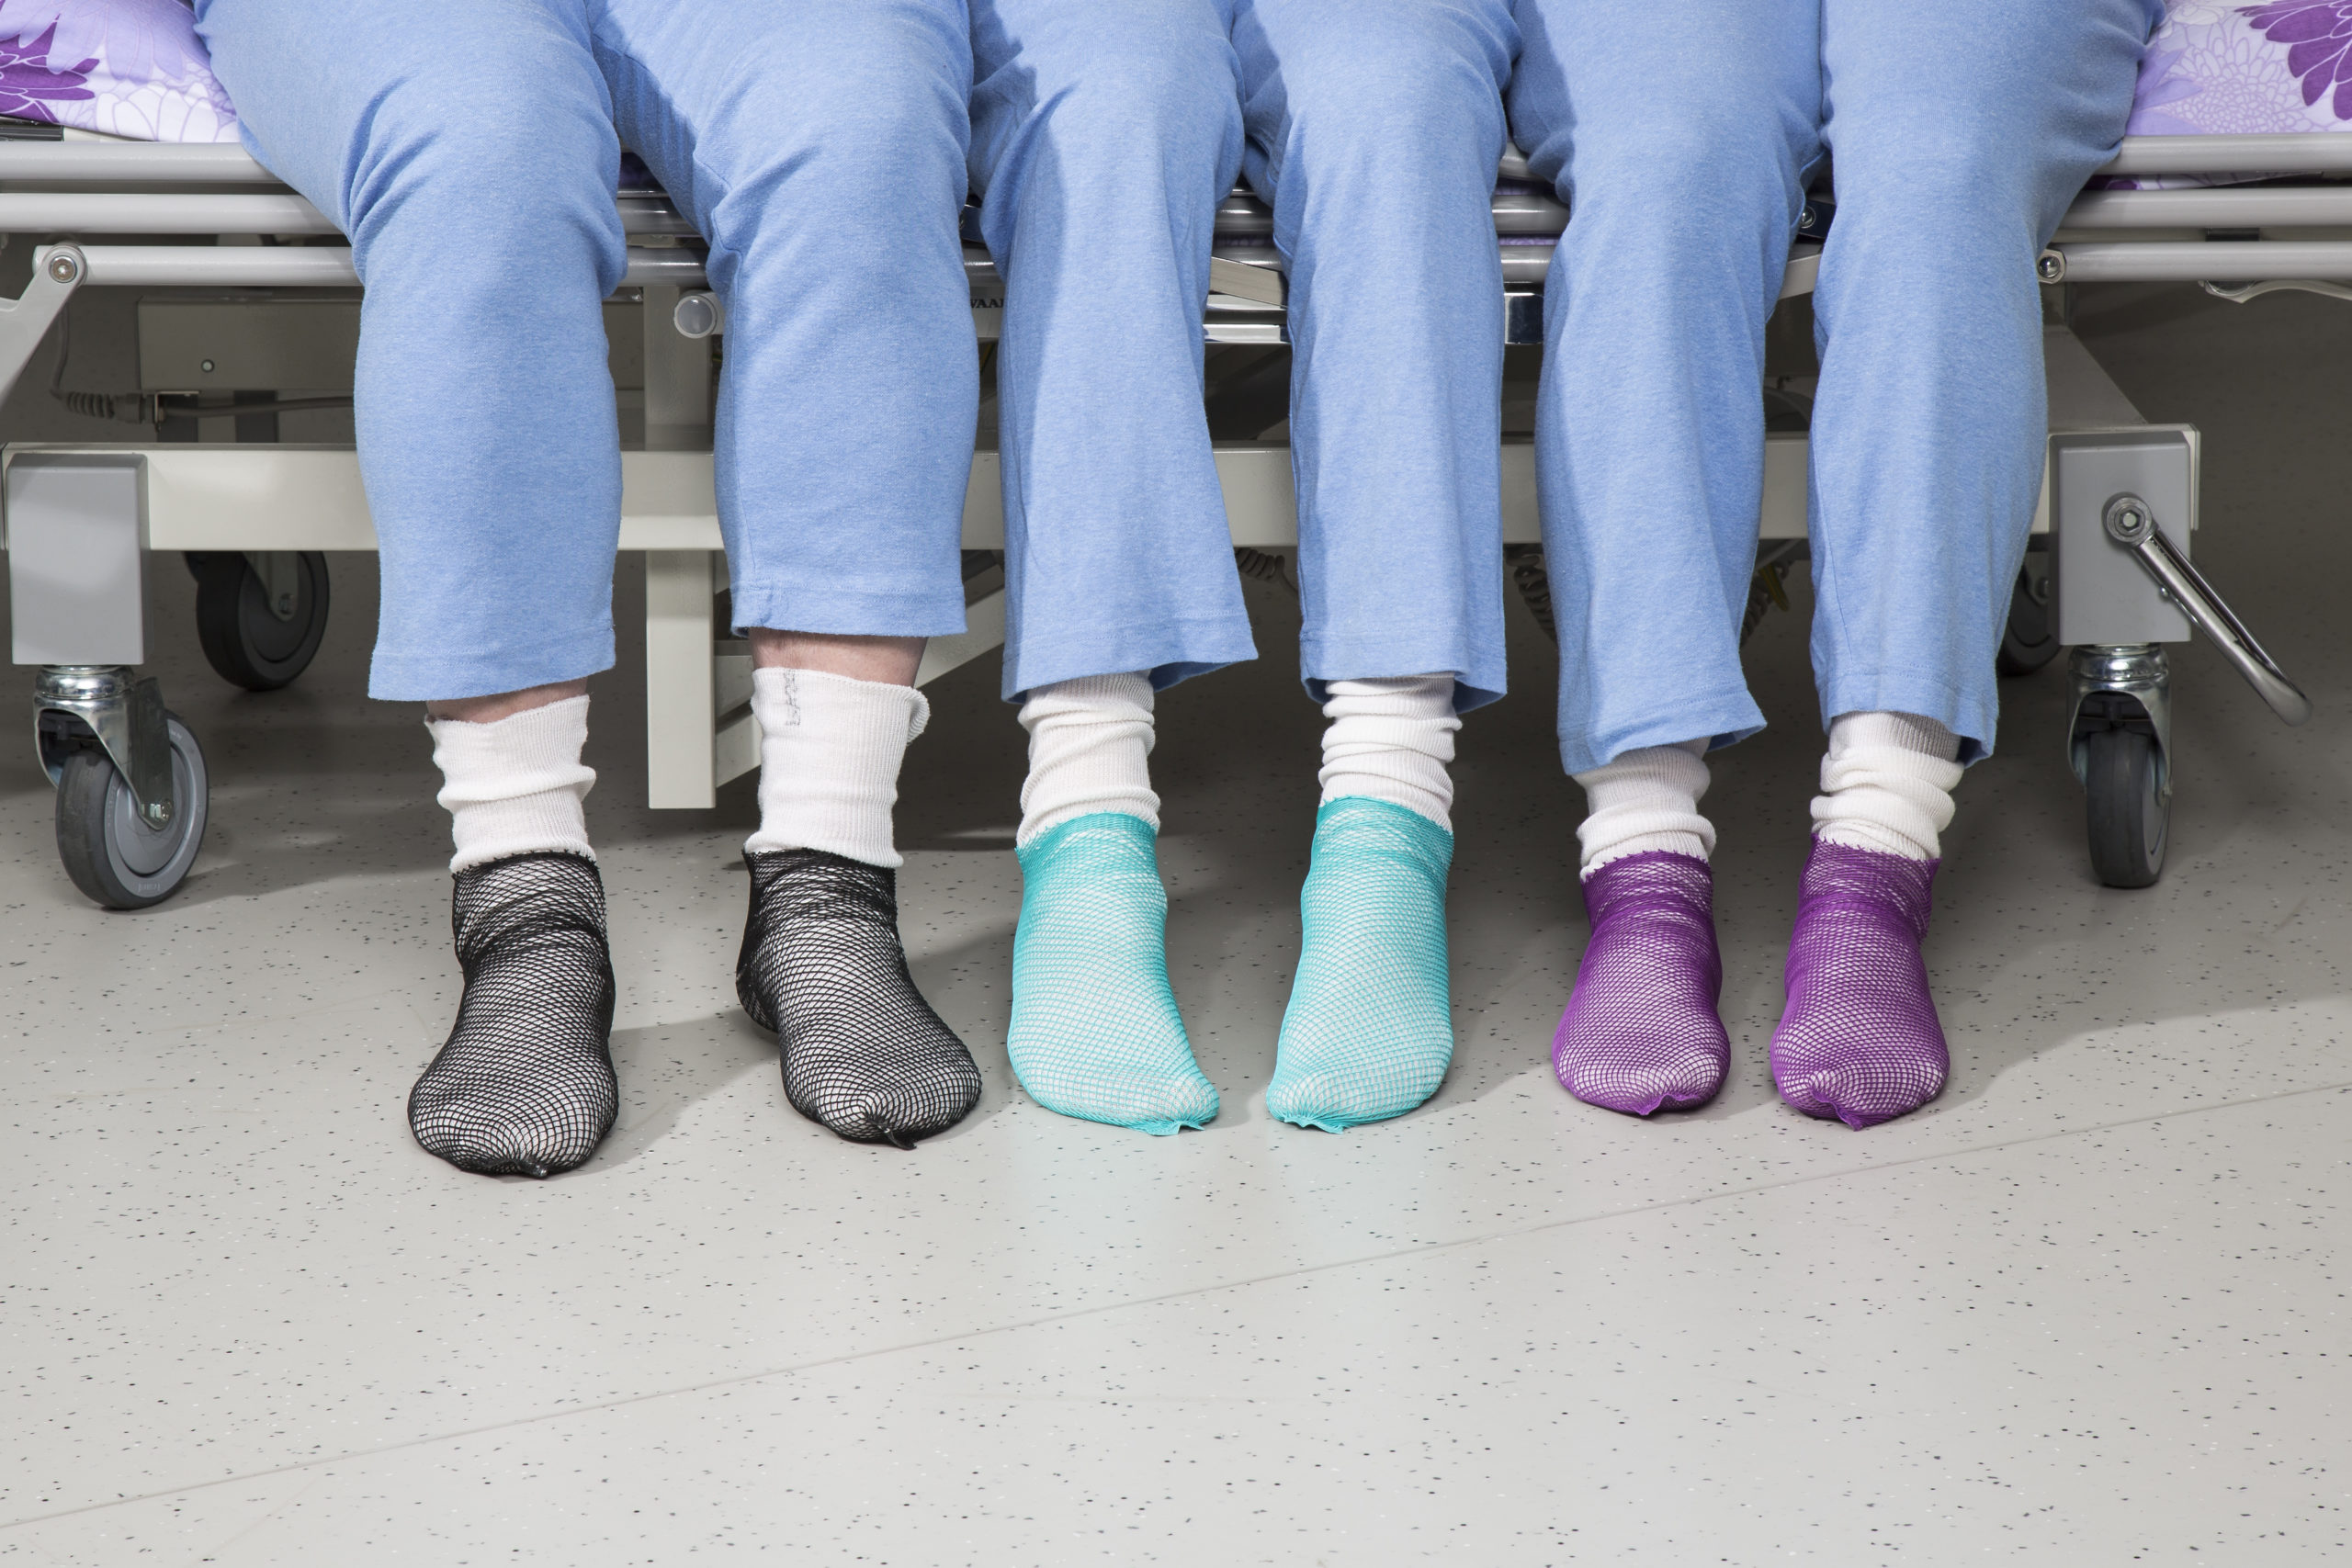 Sinihousuiset henkilöt istuvat vierekkäin sairaalasängyllä eri väriset Pitosukat jalassaan